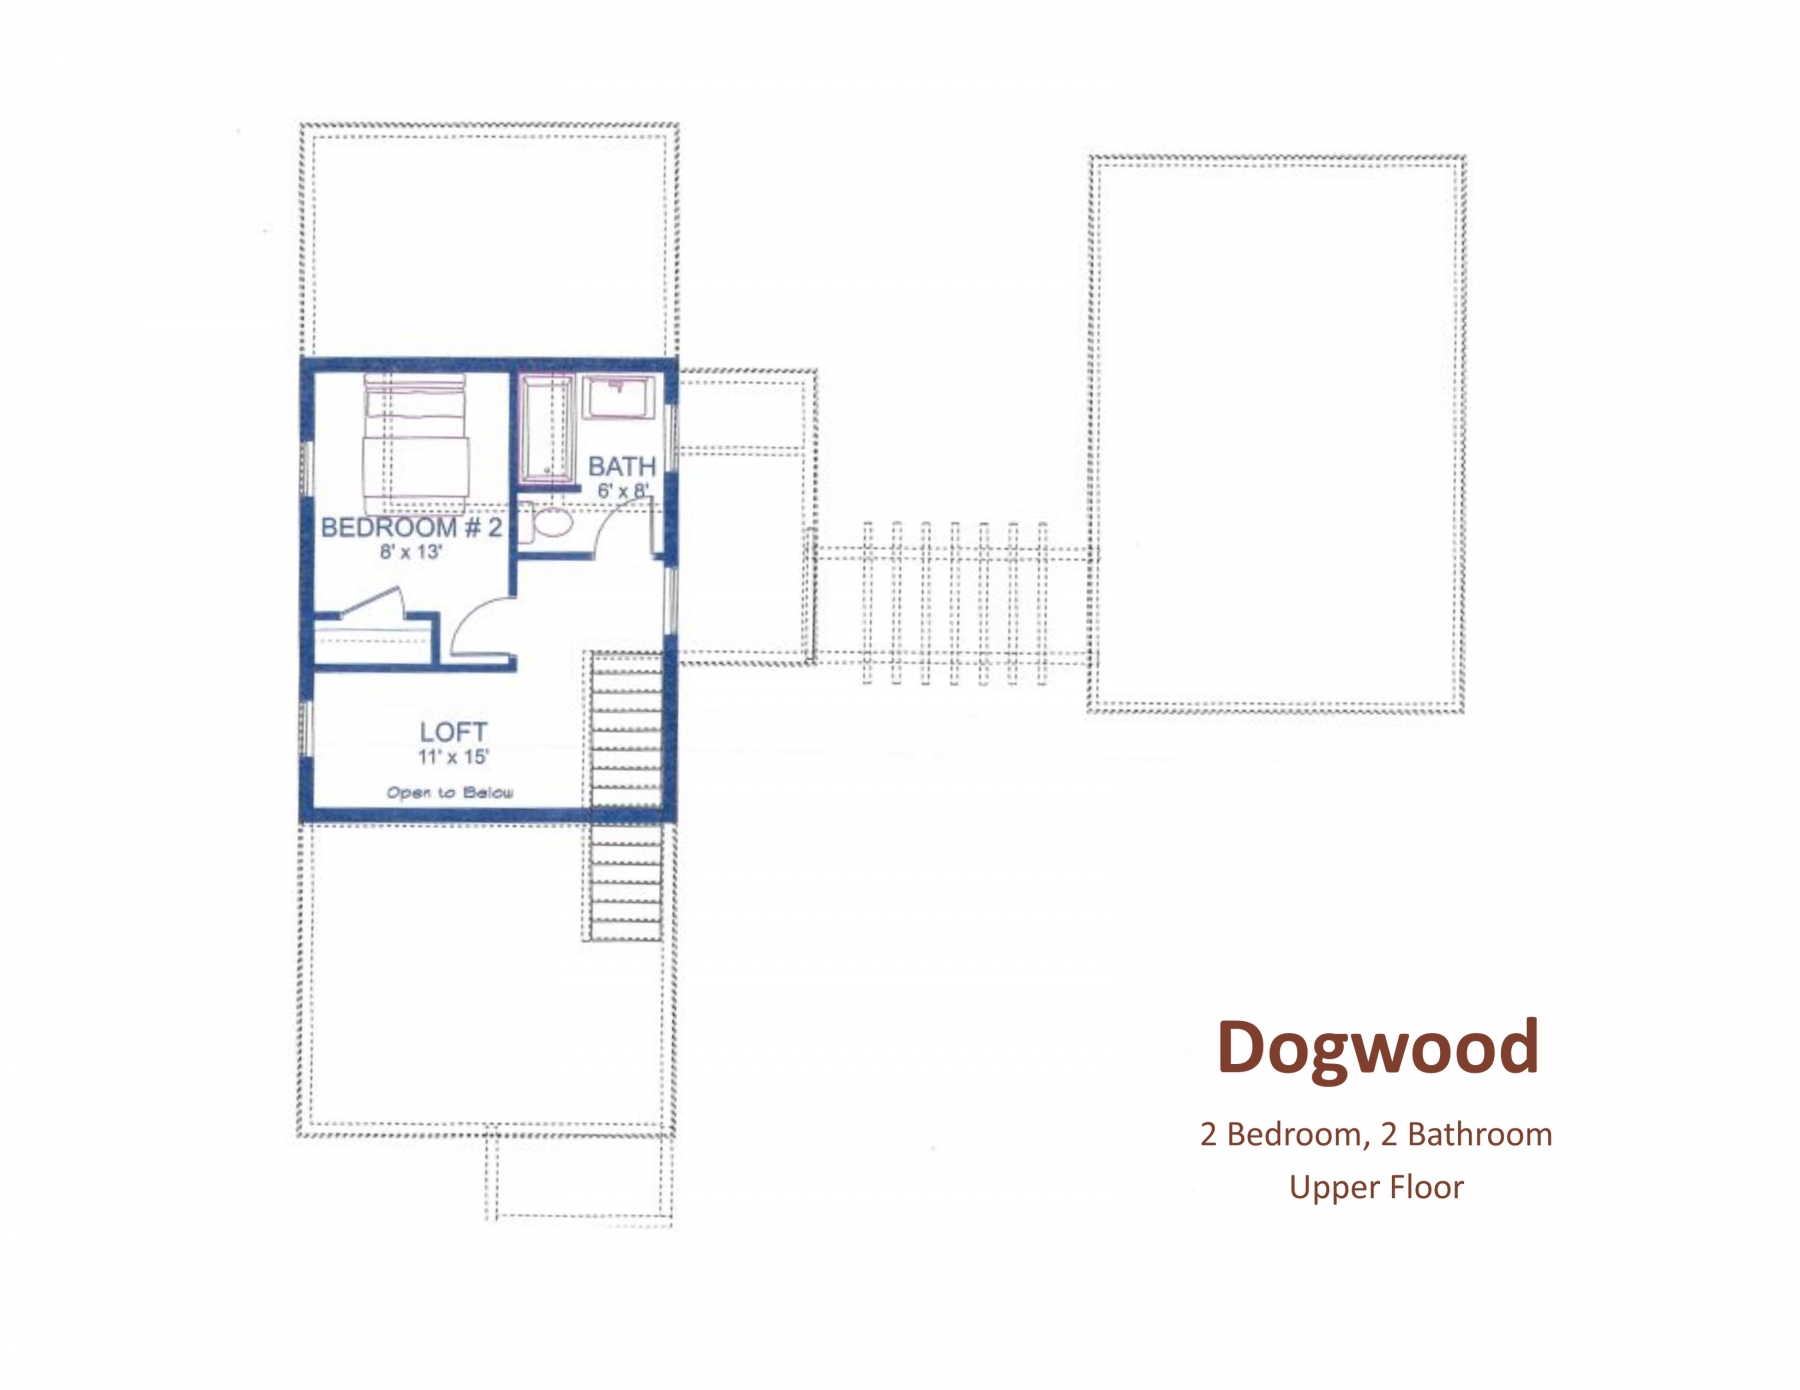 Dogwood Upper Floor